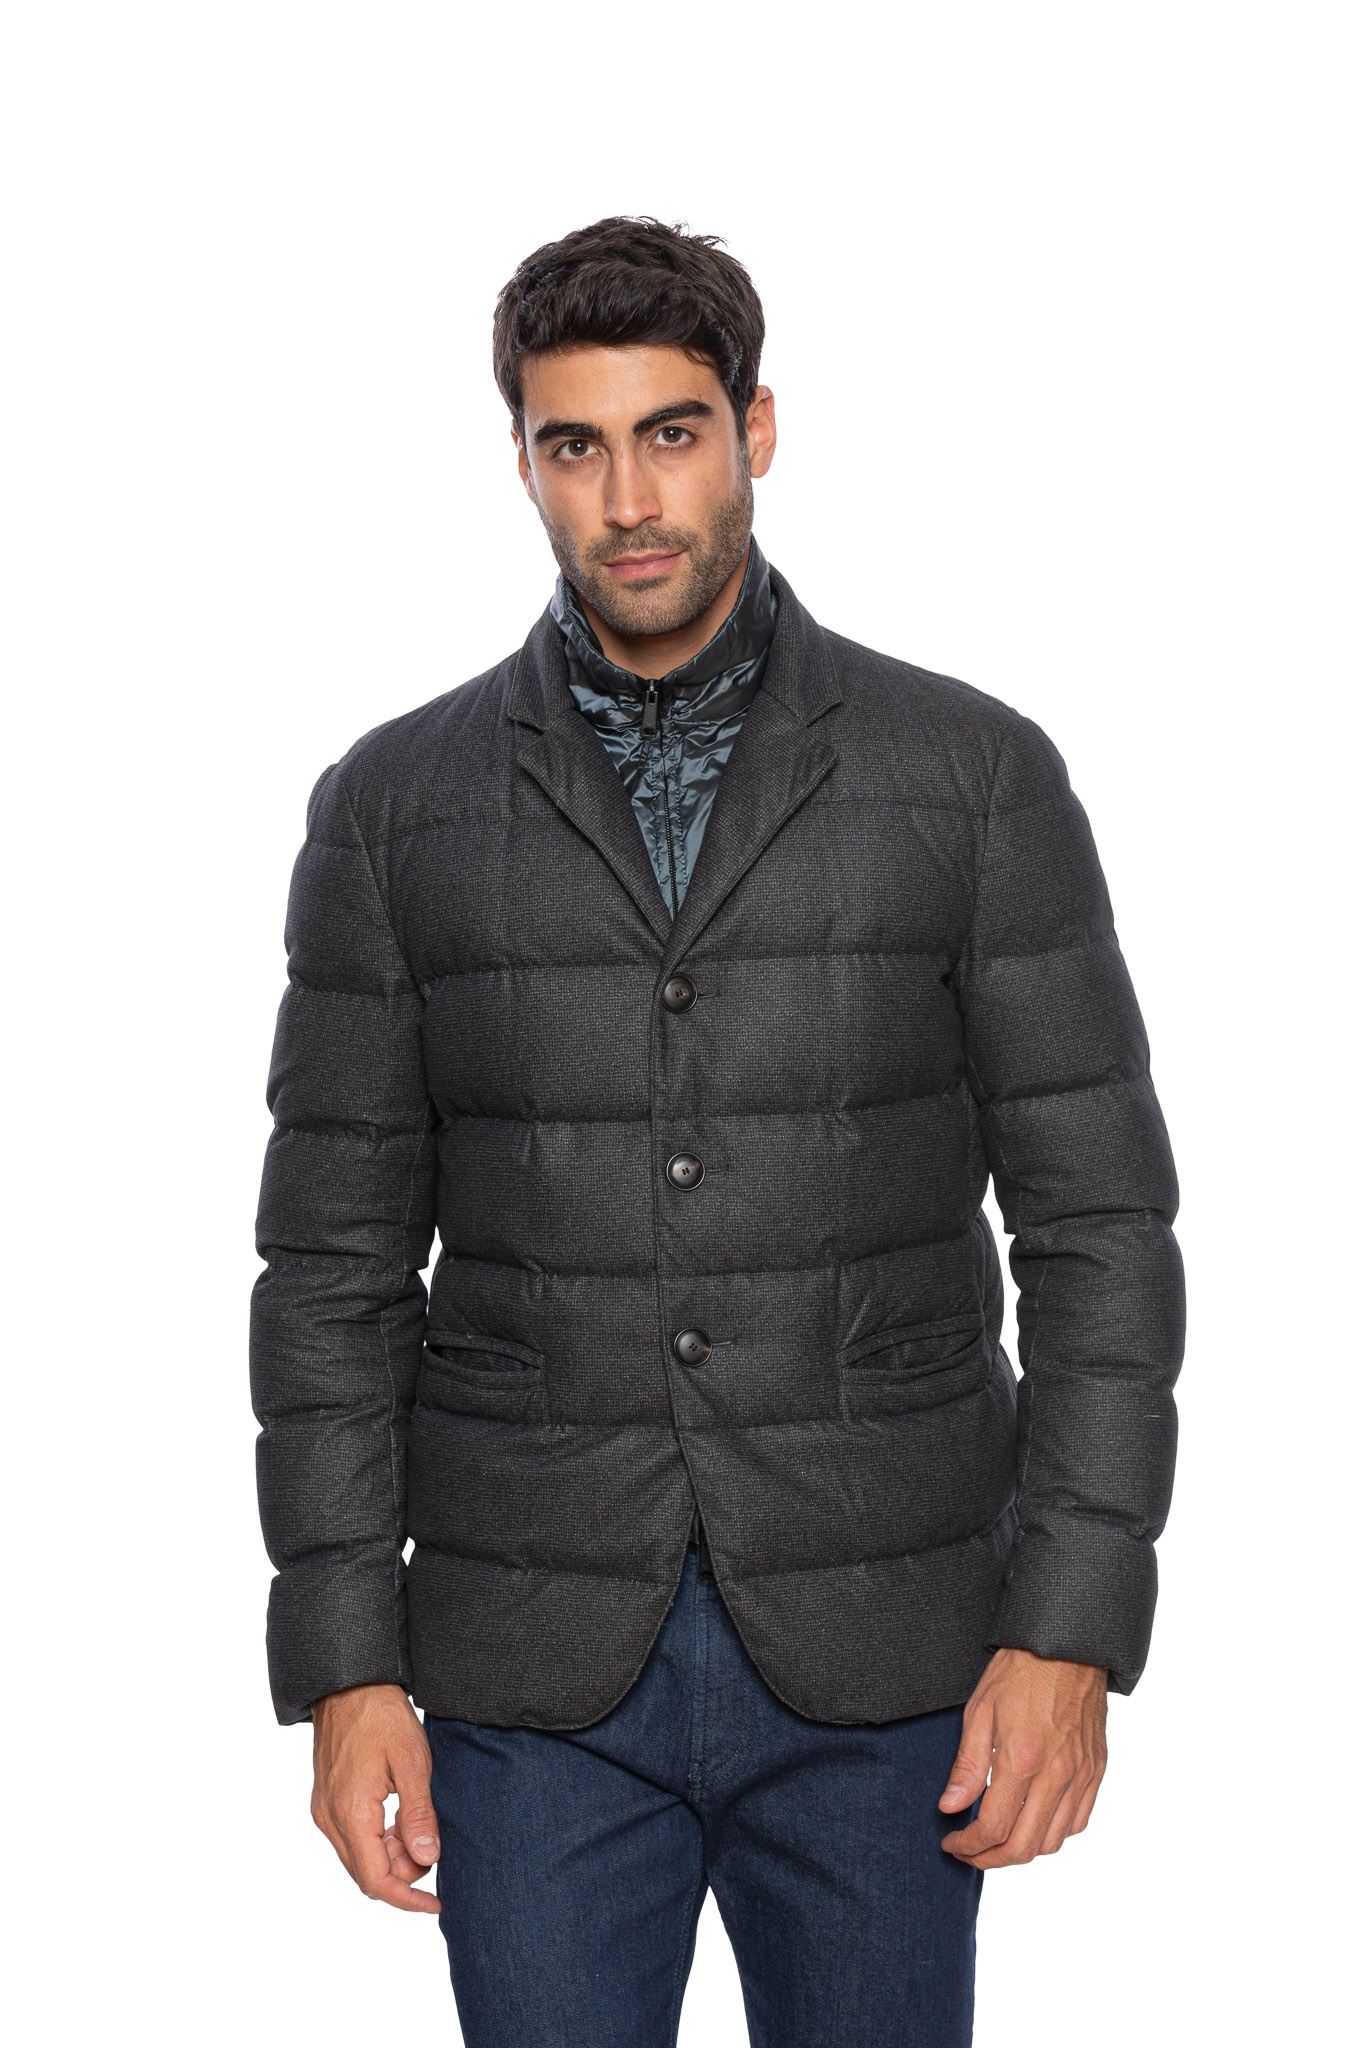 Belvest jacket - Luxgentleman